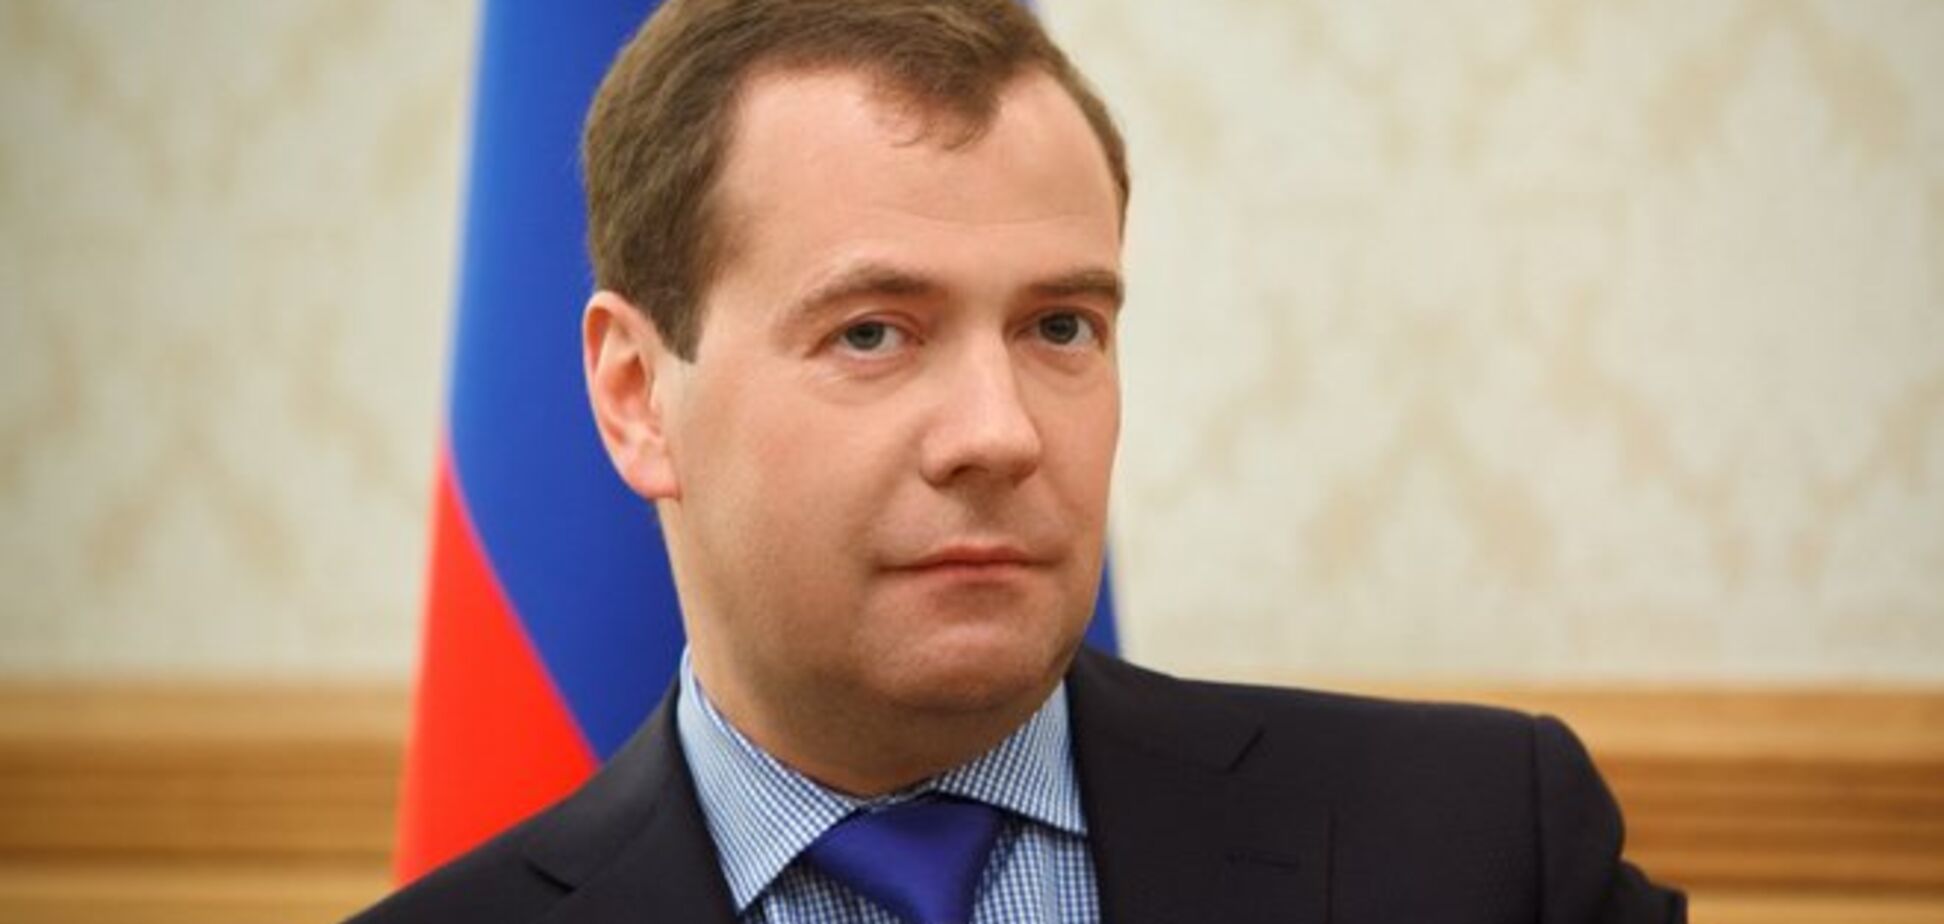 Медведев пообещал крымчанам, что проблем с украинским языком у них не будет